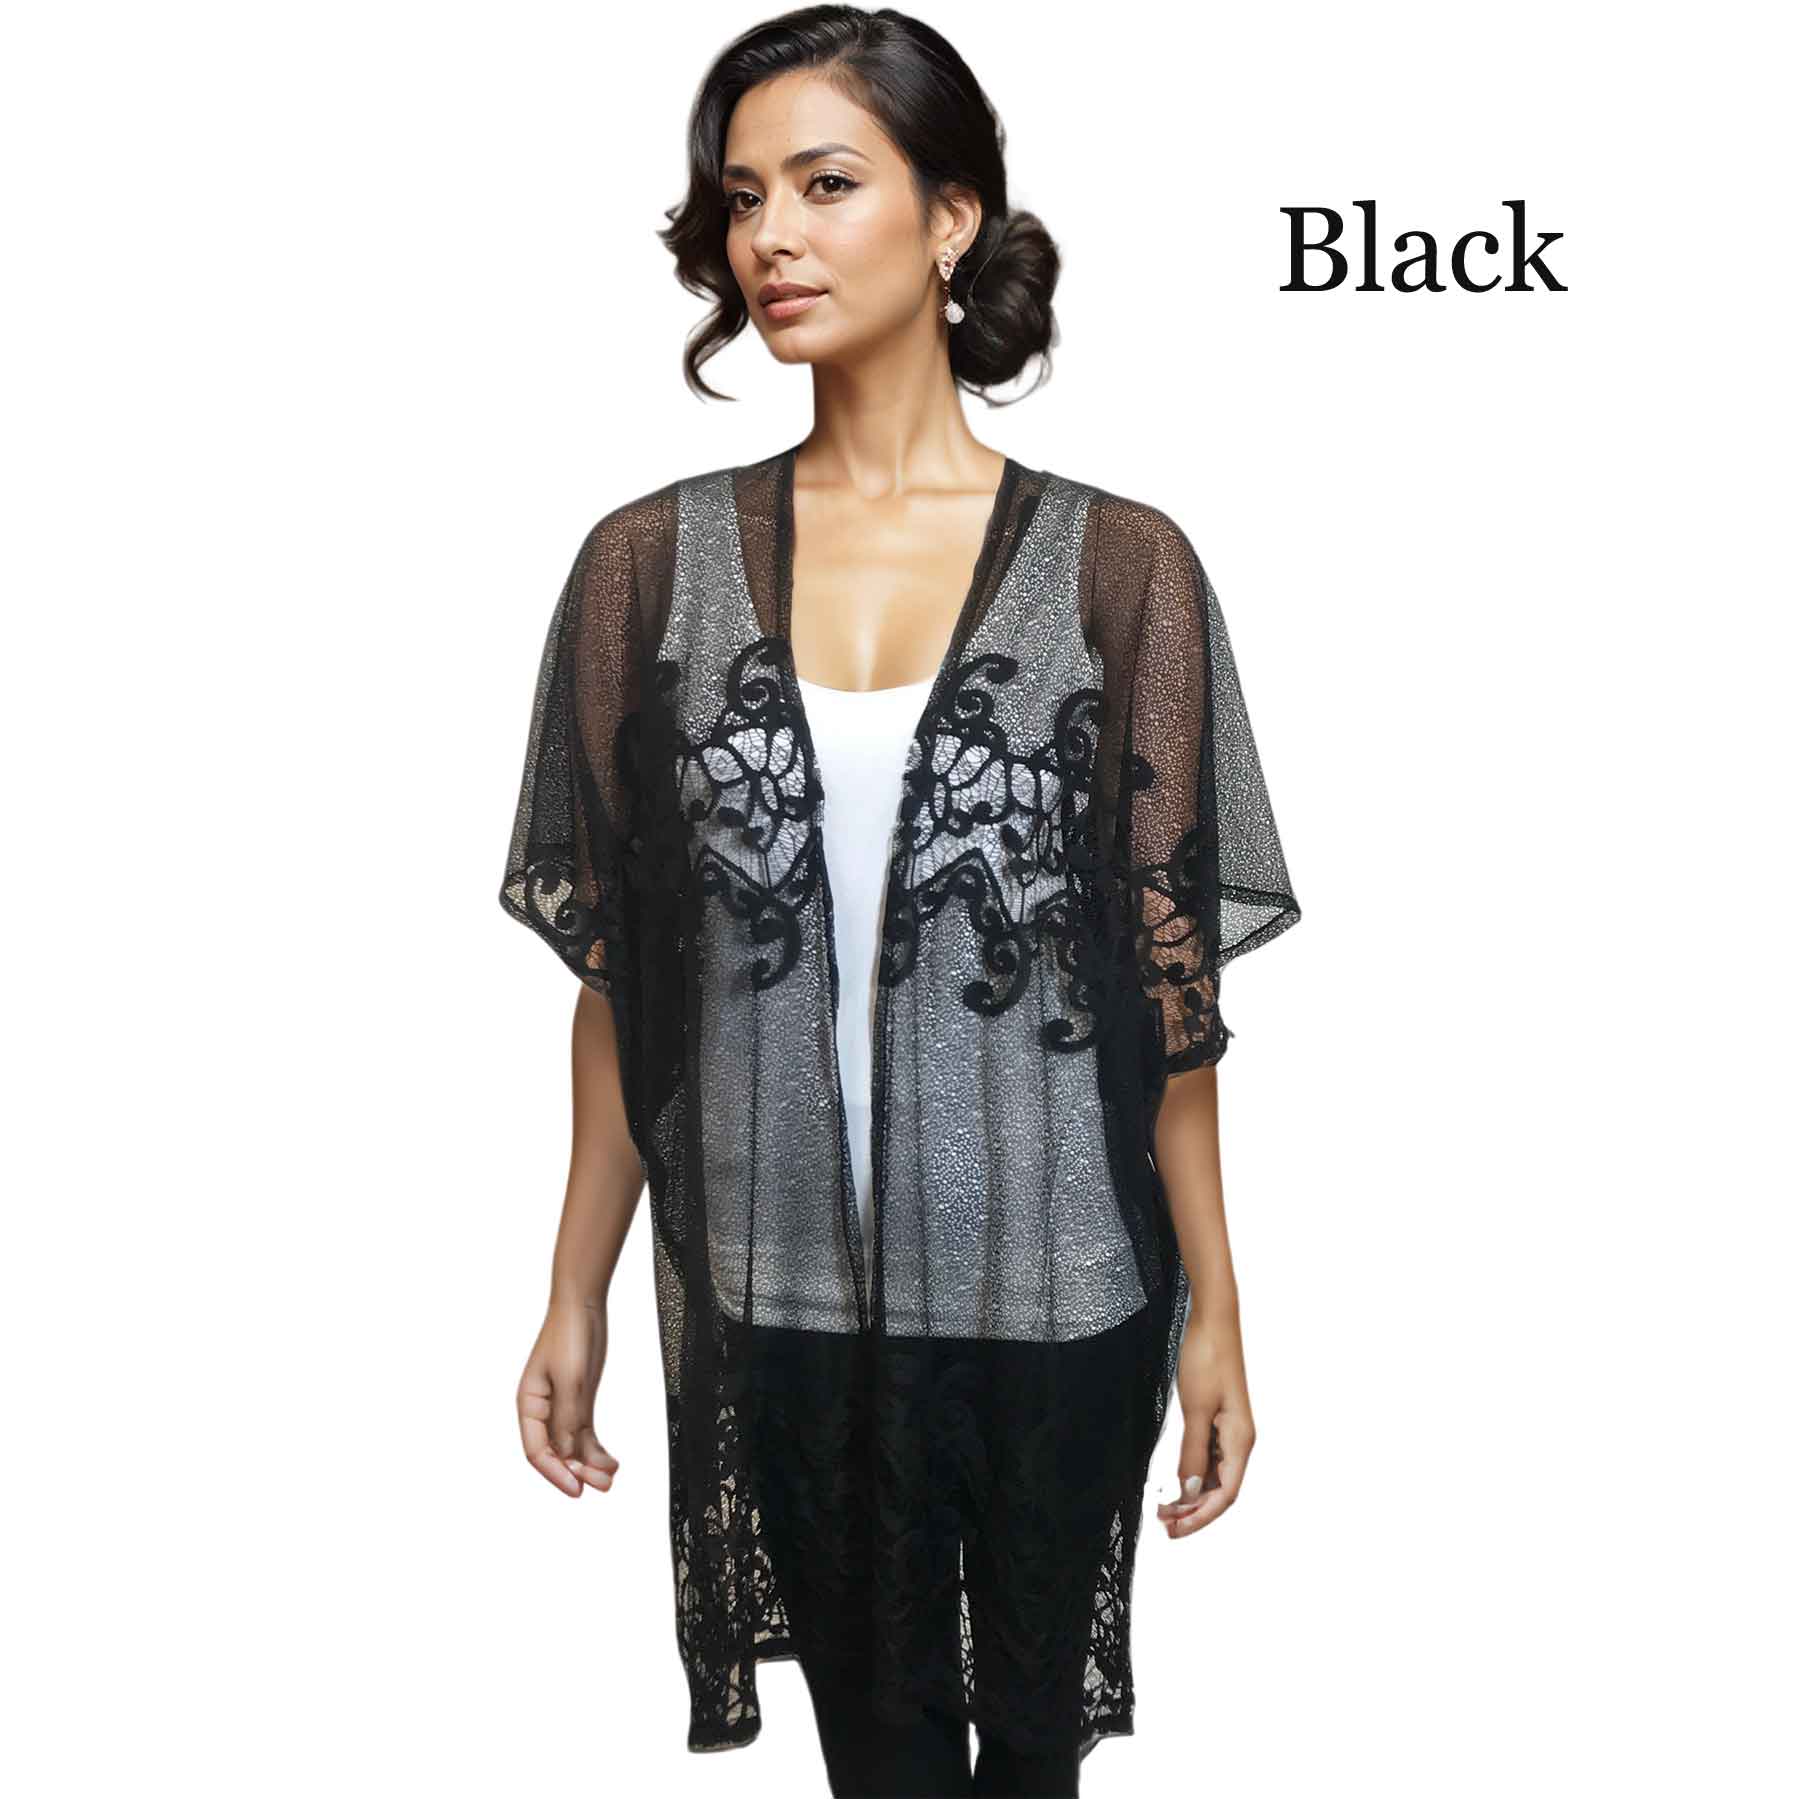 Black Kimono - Lace Design 9251